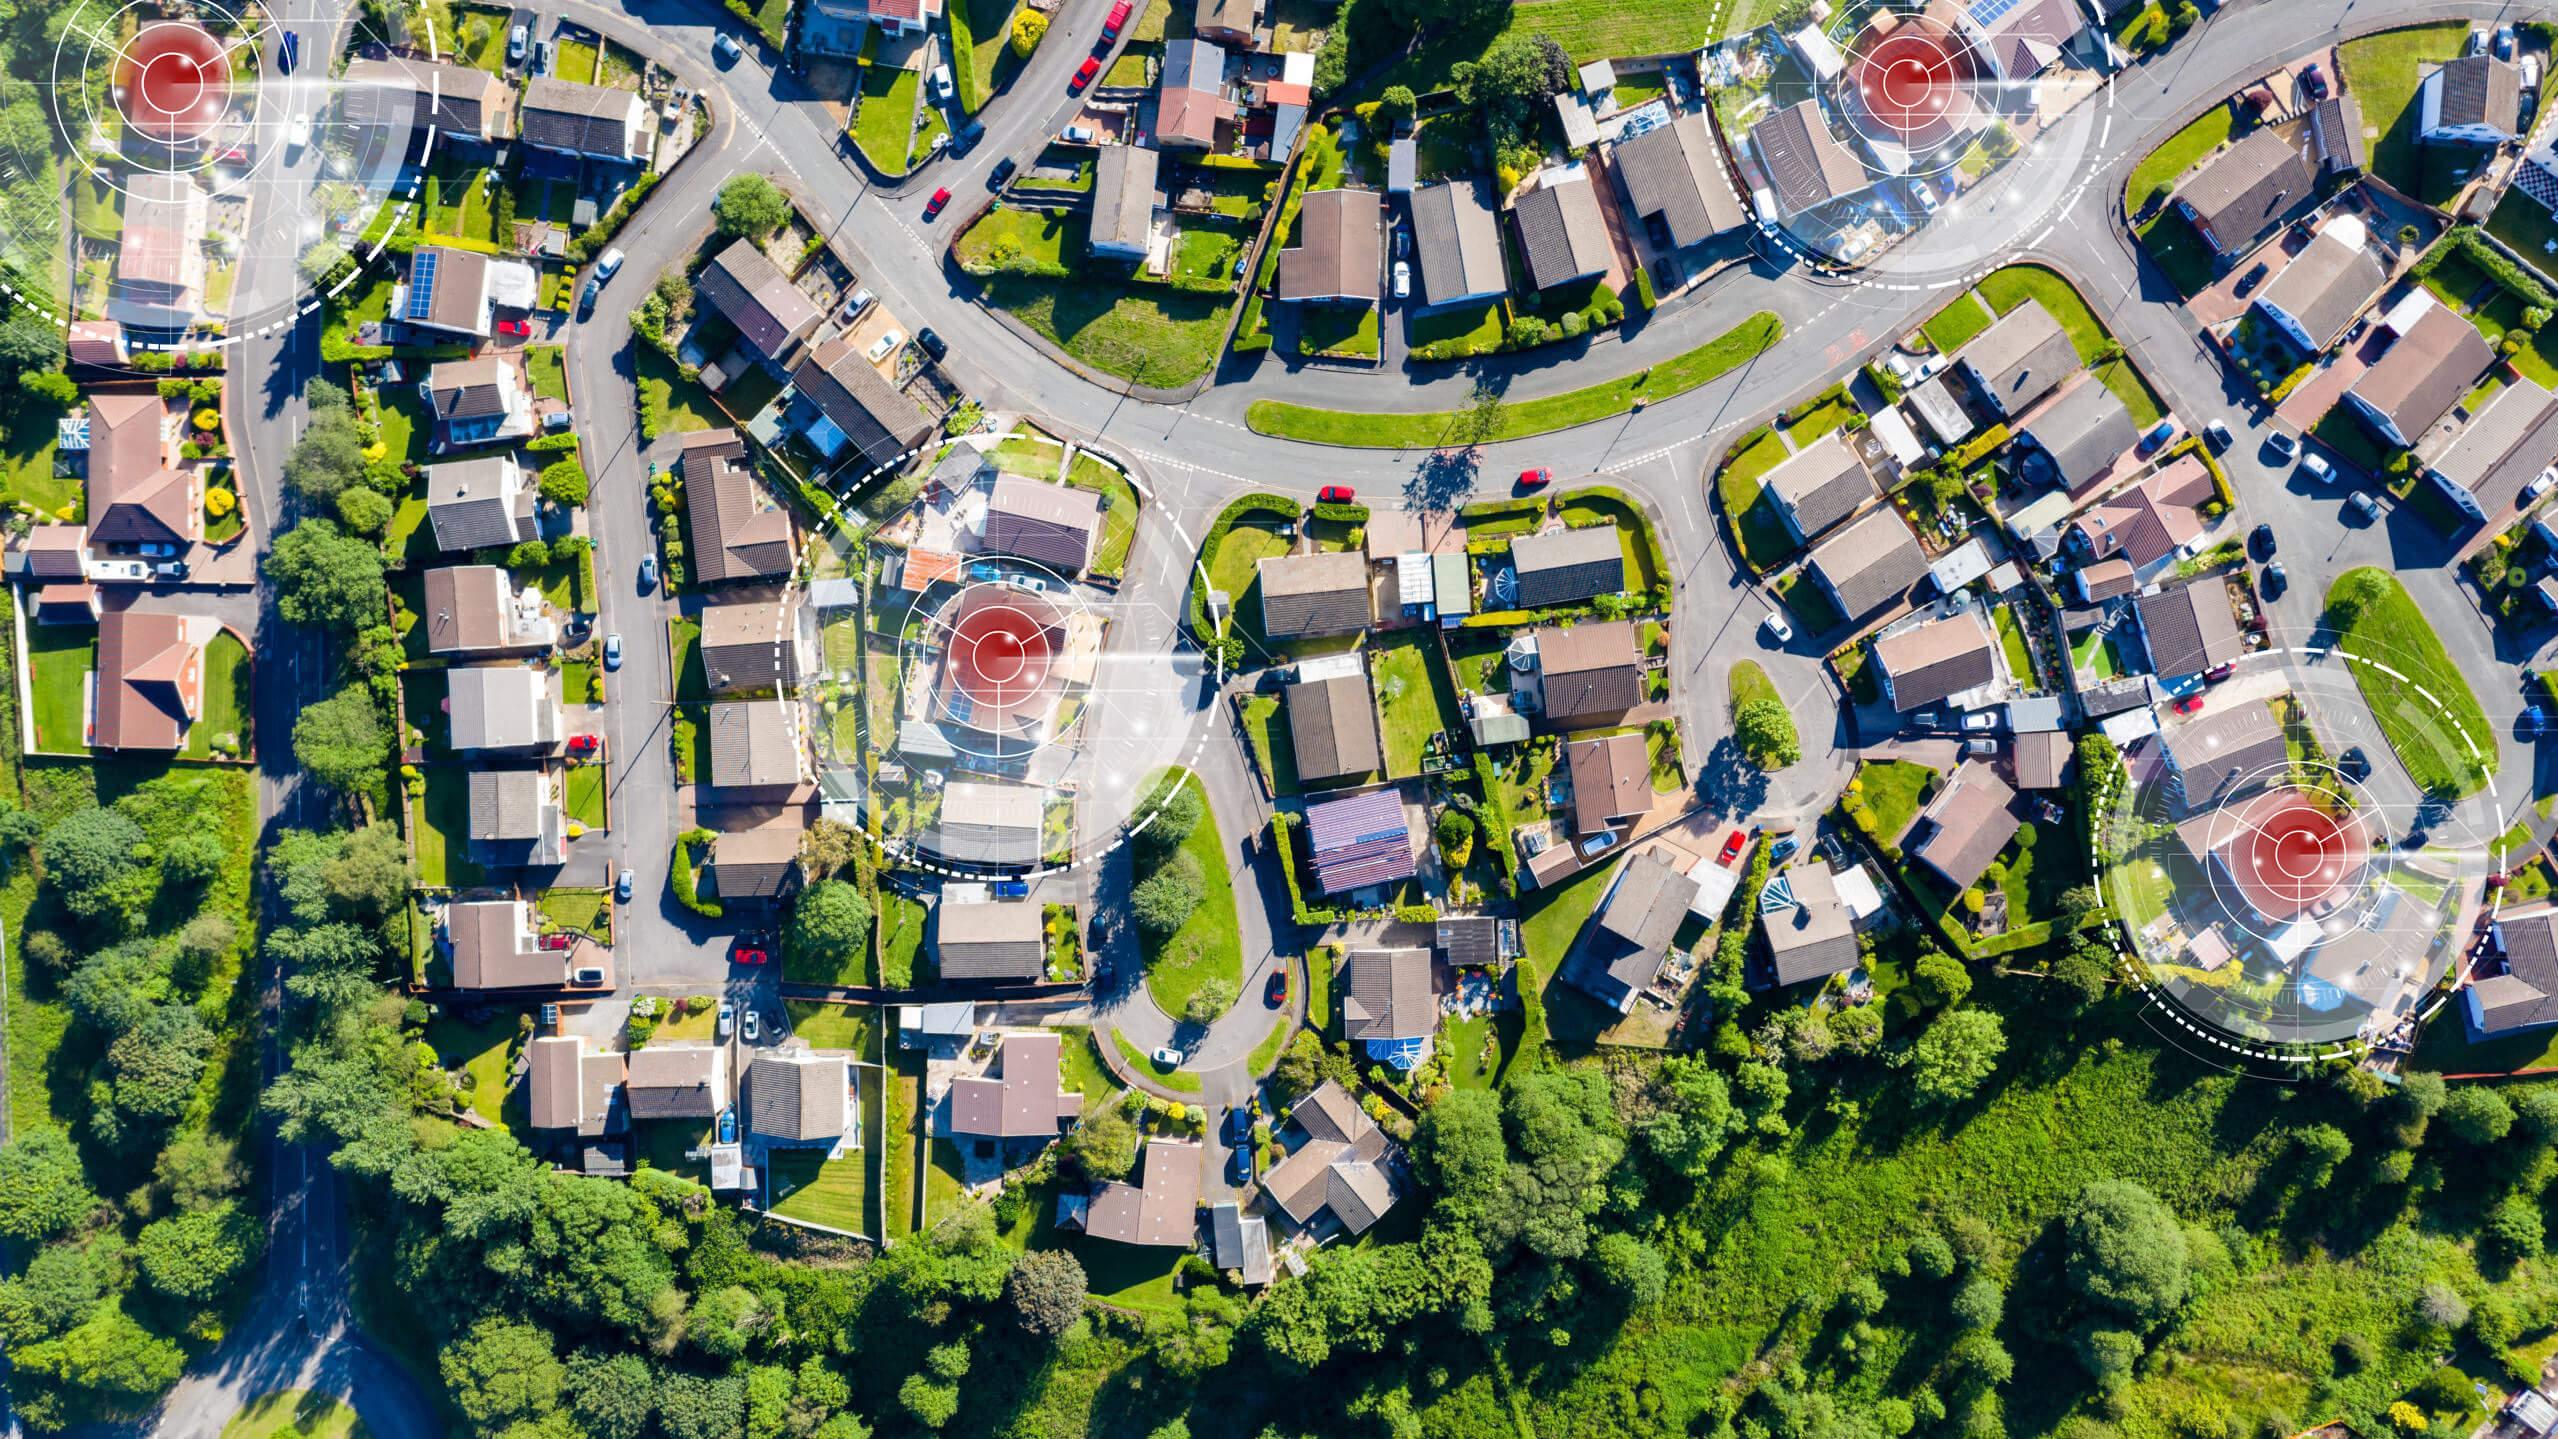 Aerial view of neighborhoods